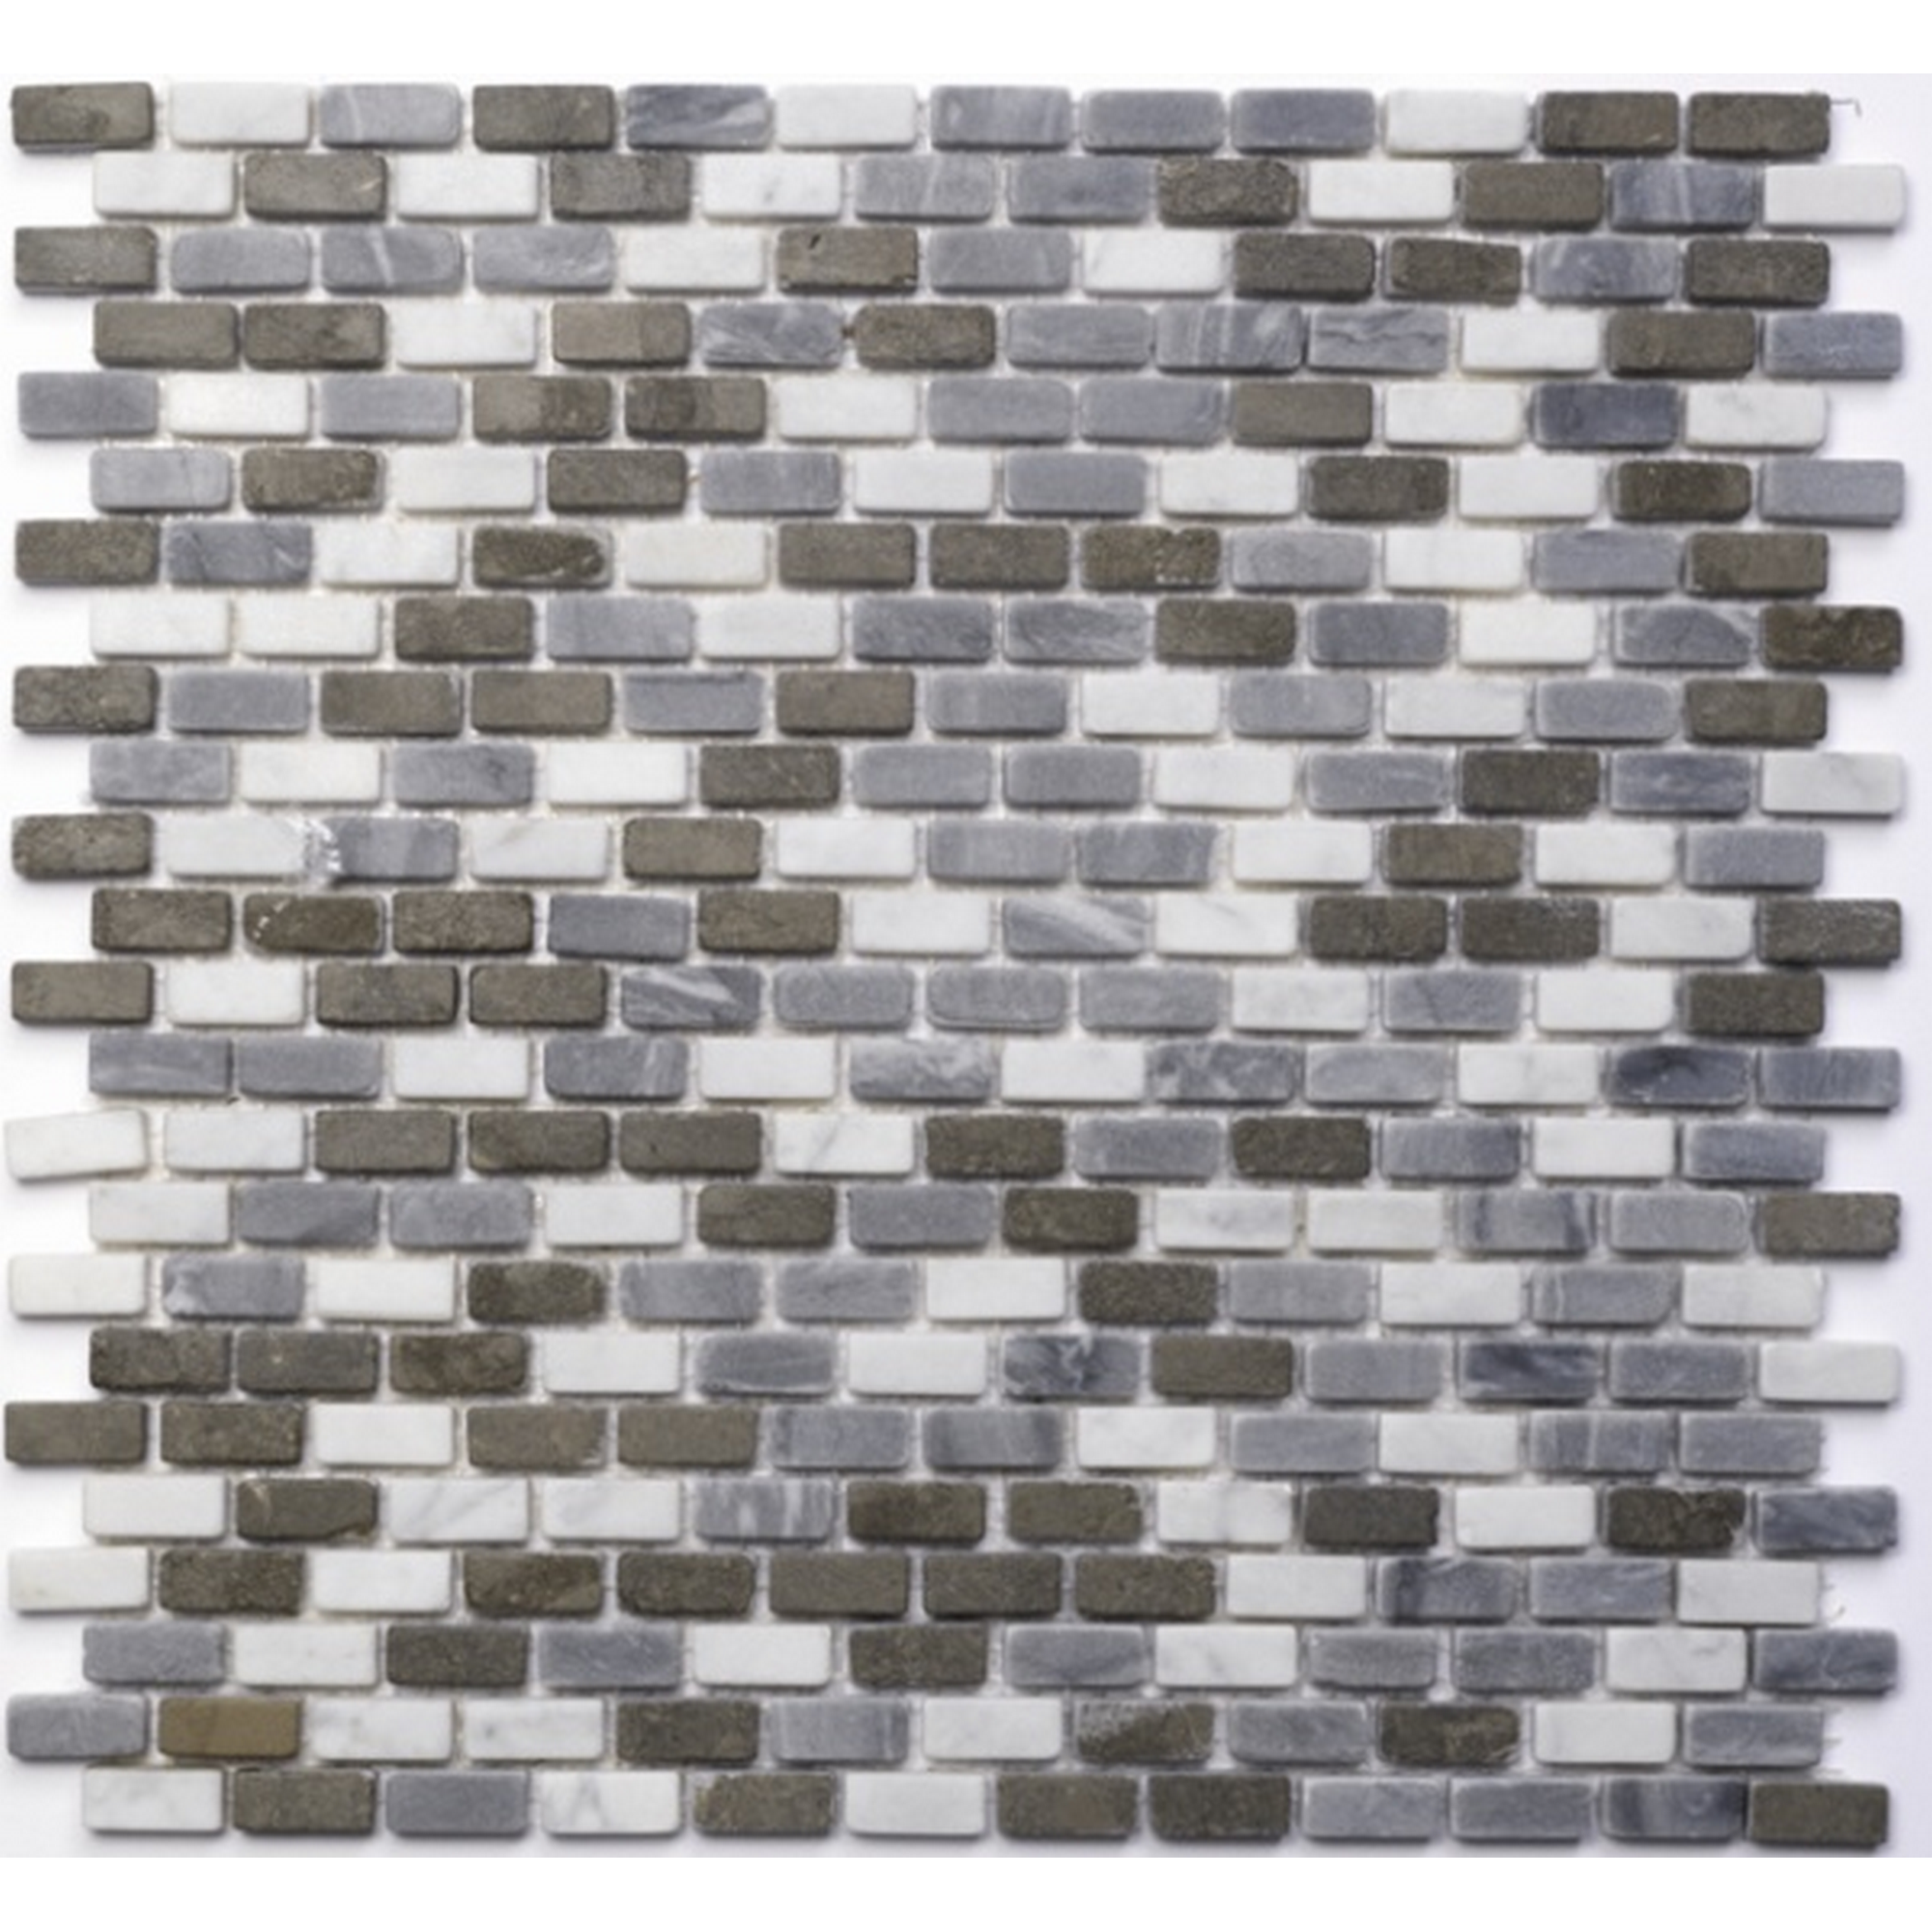 Mosaikfliese 'Brick' Naturstein weiß-grau 30 x 30 cm + product picture